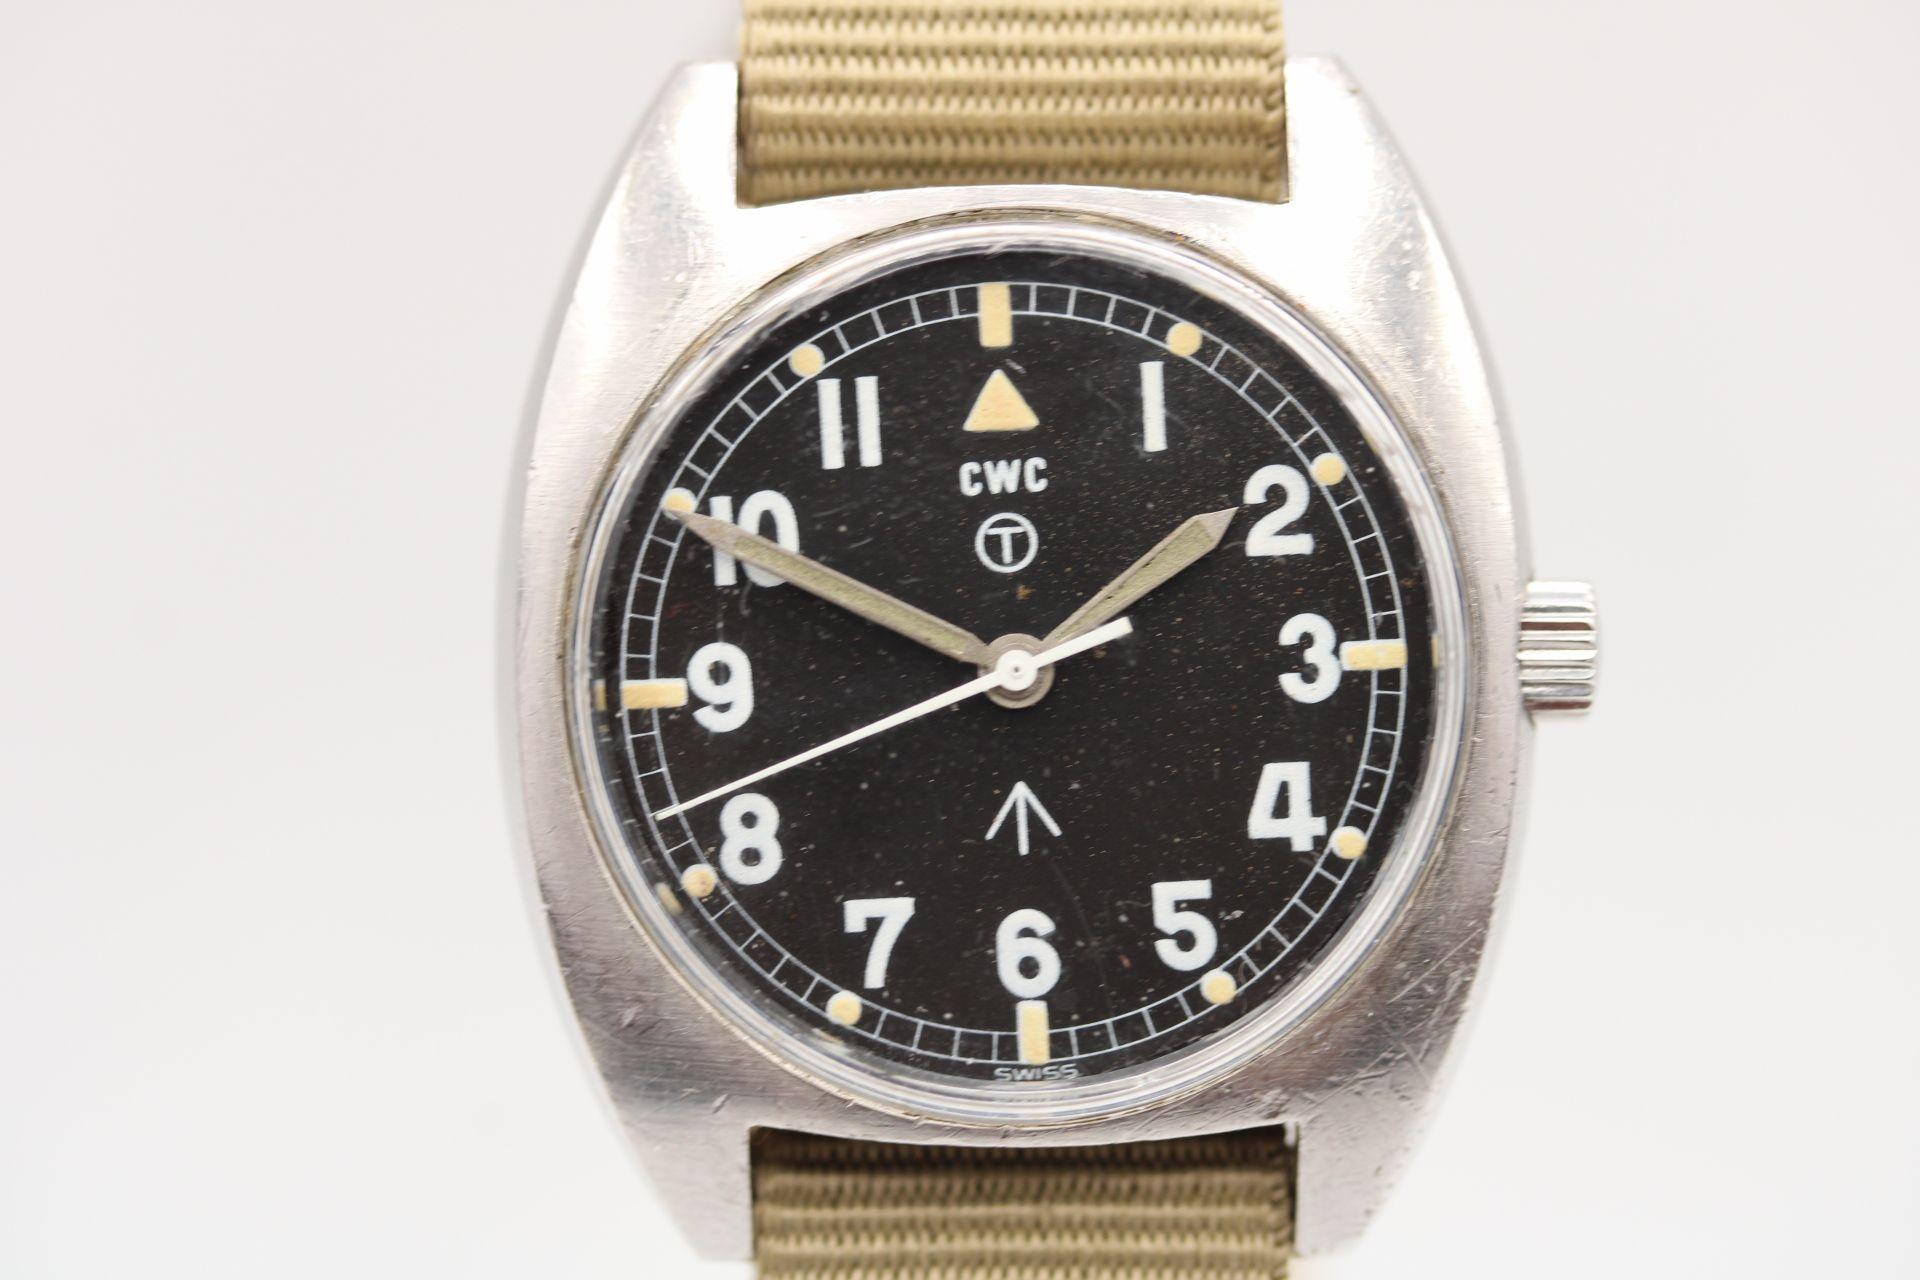 Une montre militaire britannique originale pour un prix ridiculement bas, cette CWC W10 de 1977 aurait été délivrée à l'armée britannique après avoir été lancée au début des années 70.

Mouvement à remontage manuel offrant une réserve de marche